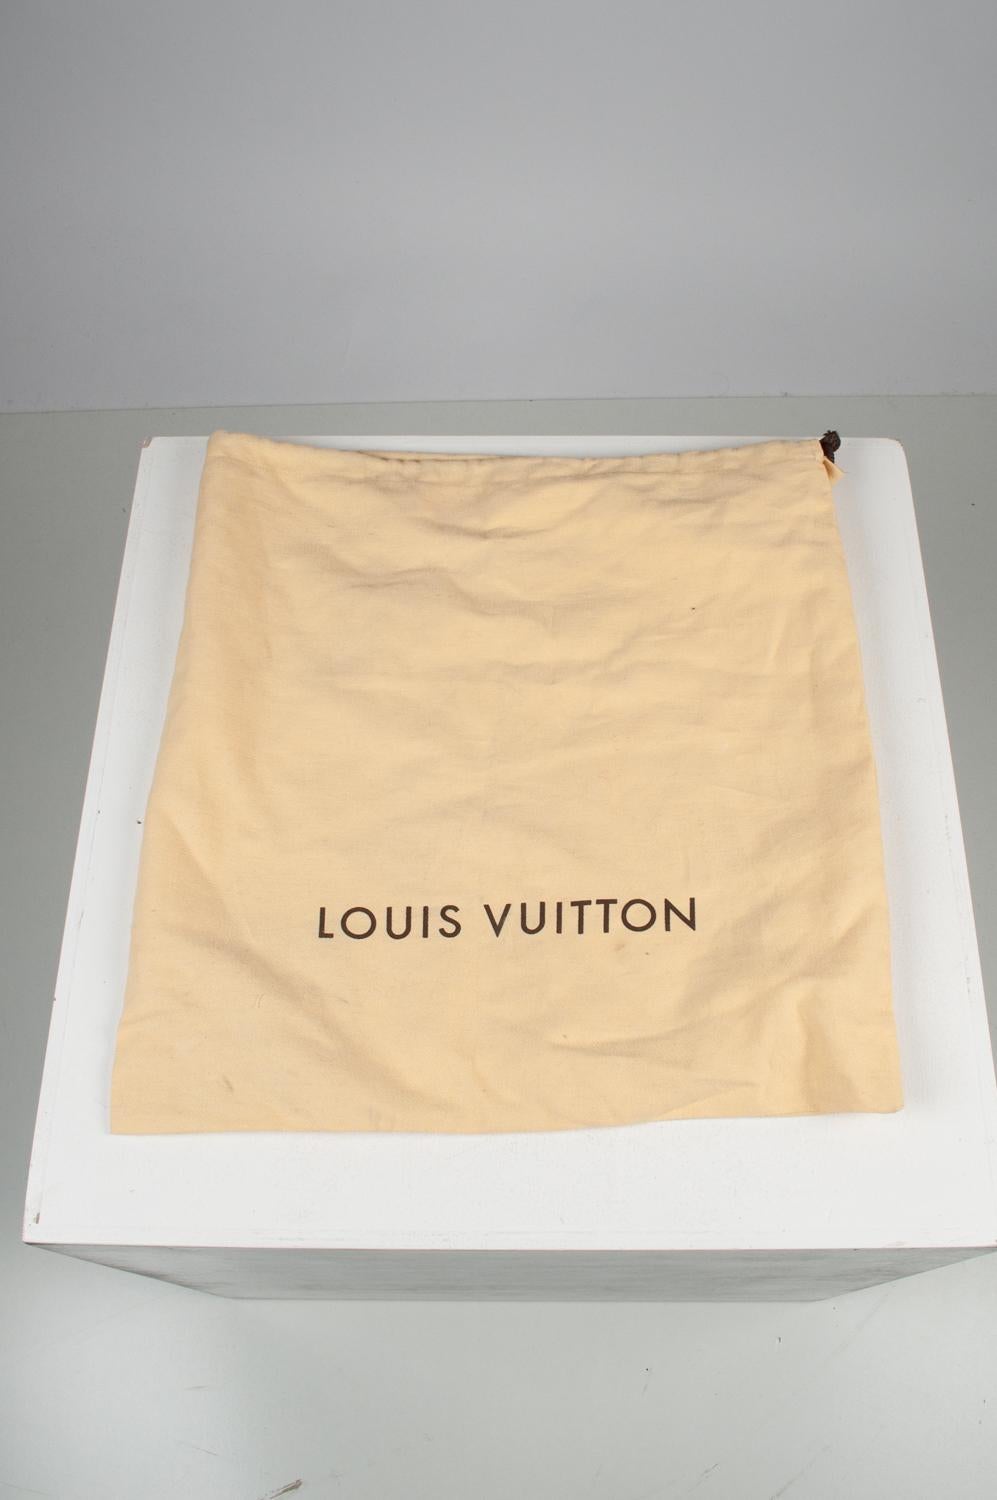 Louis Vuitton Men Shoes Oxford Derbies Size 10USA, S570 For Sale 1